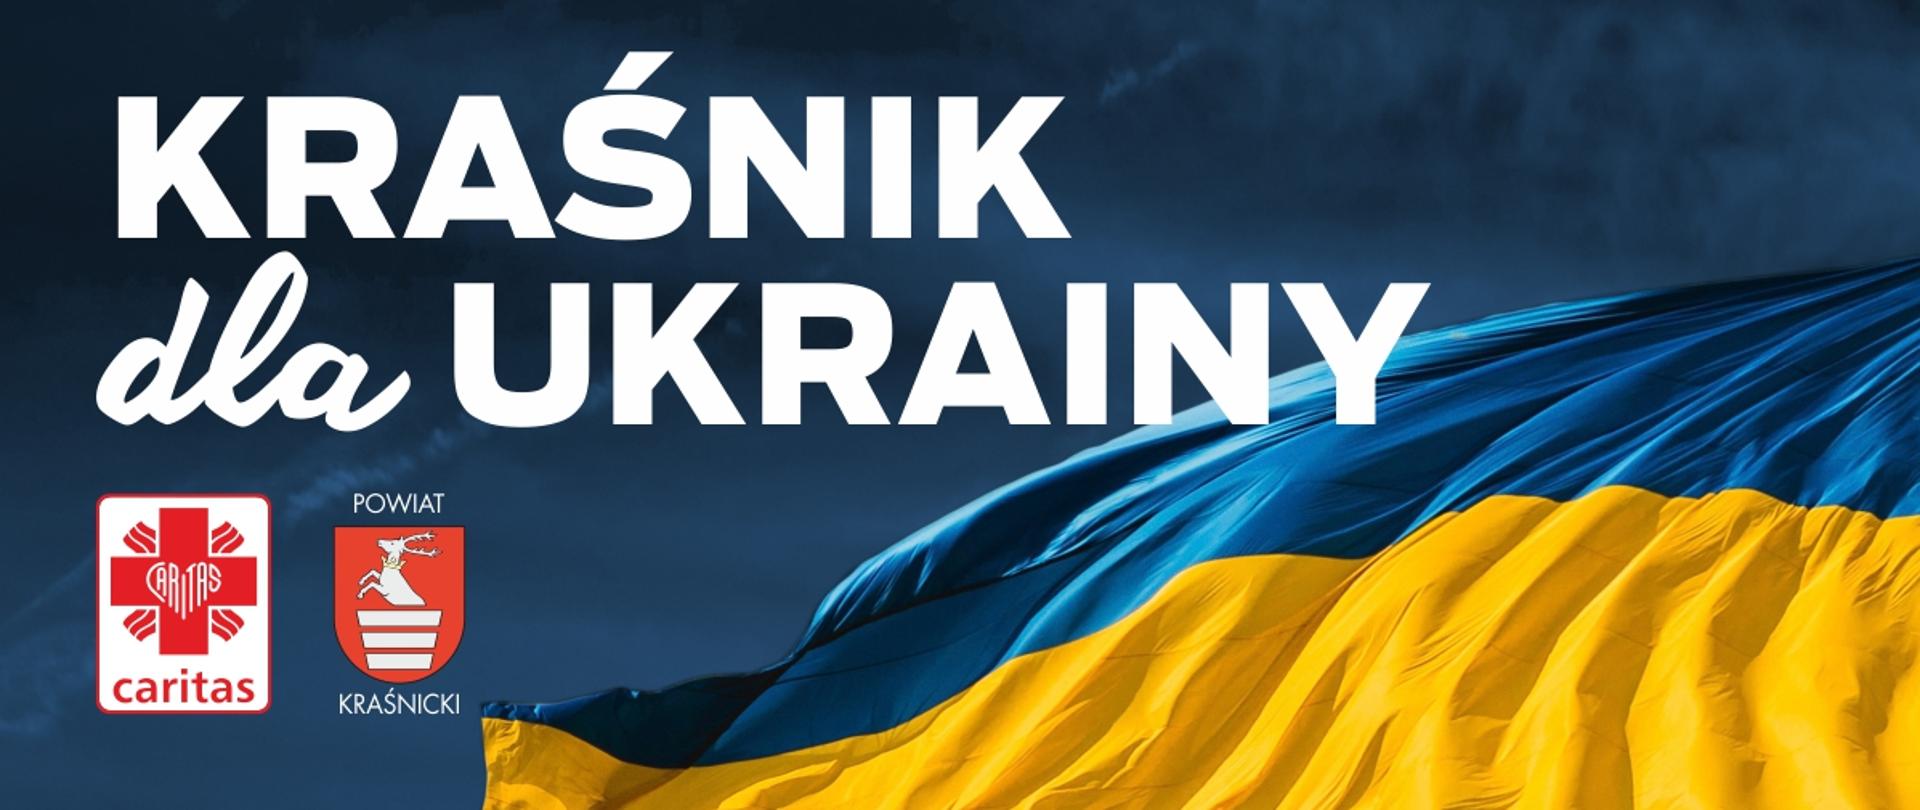 Grafika promująca akcję "Kraśnik dla Ukrainy".